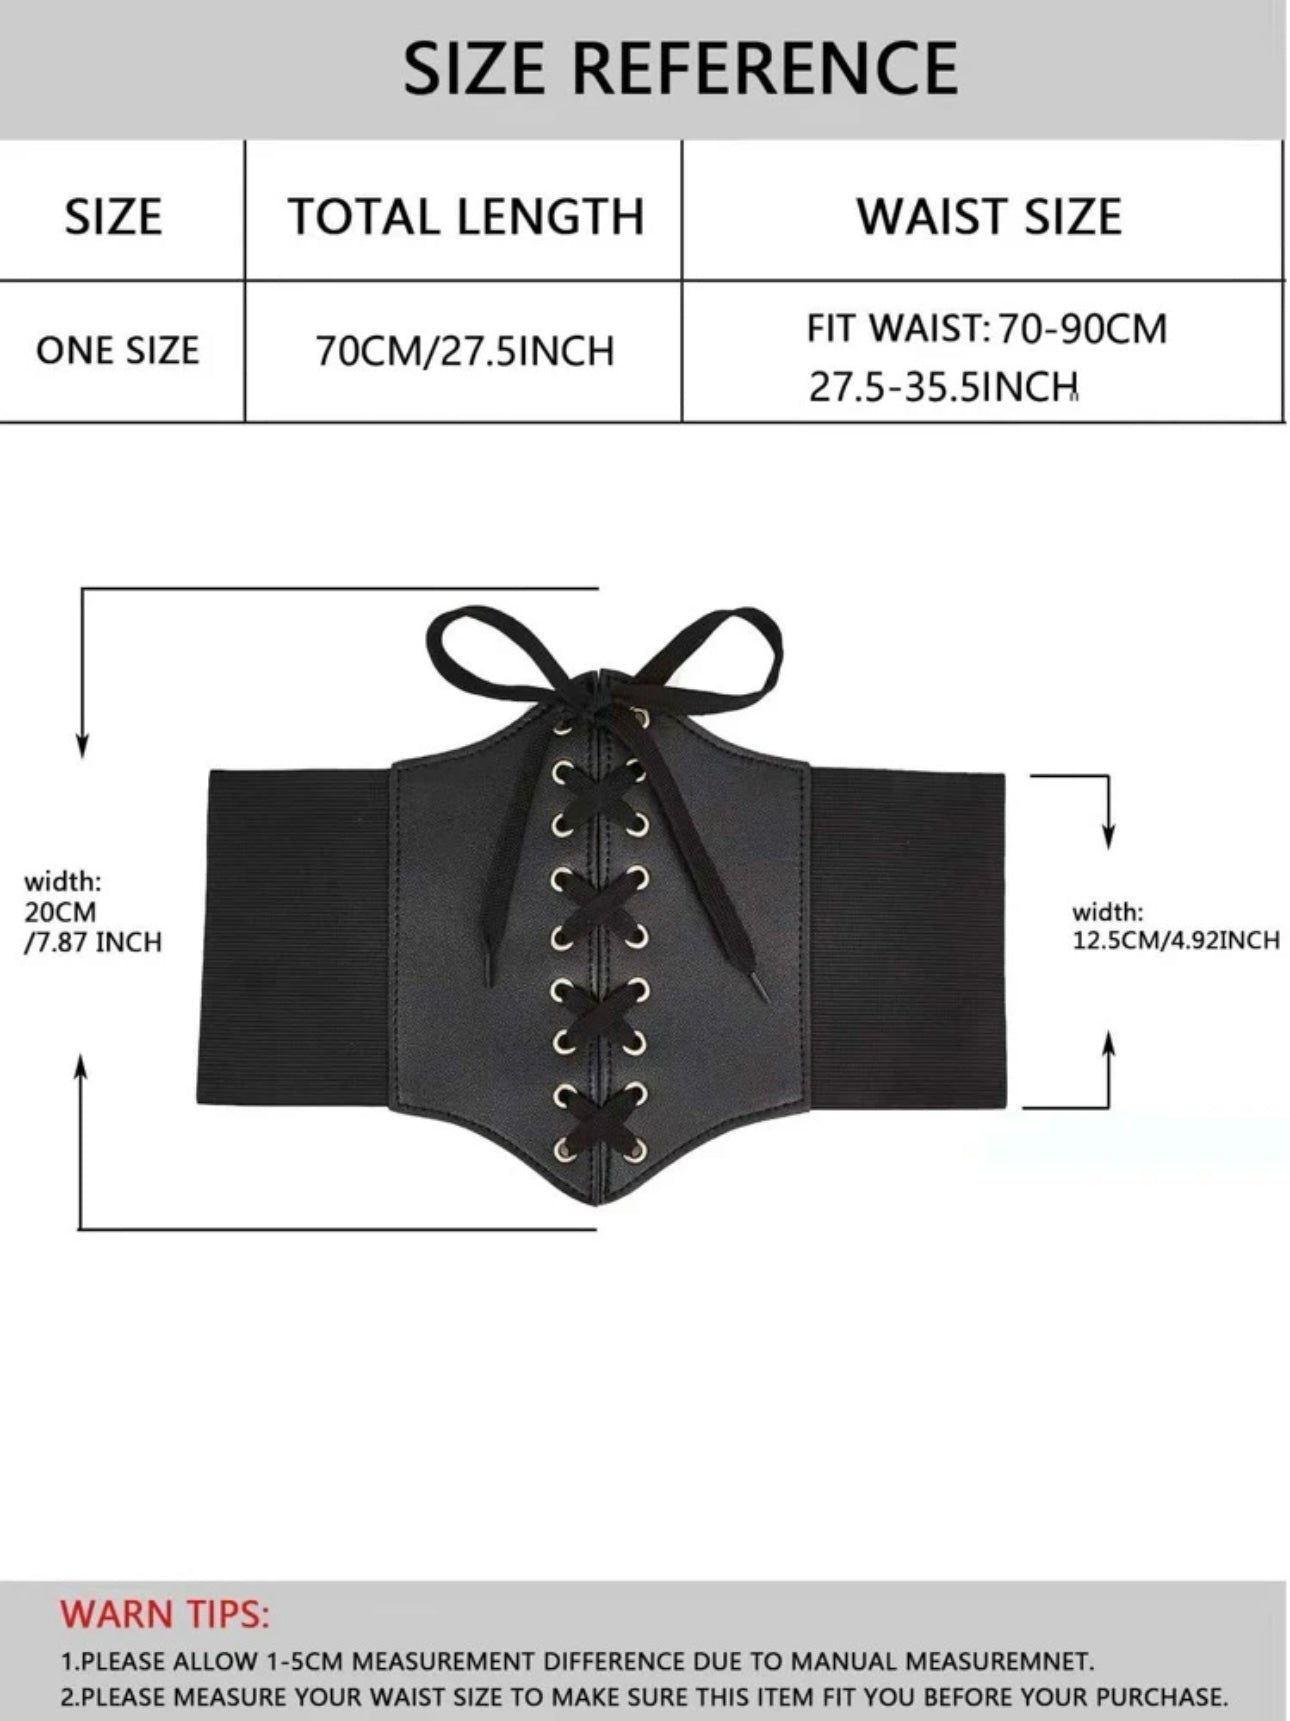 Black lace-up corset belt